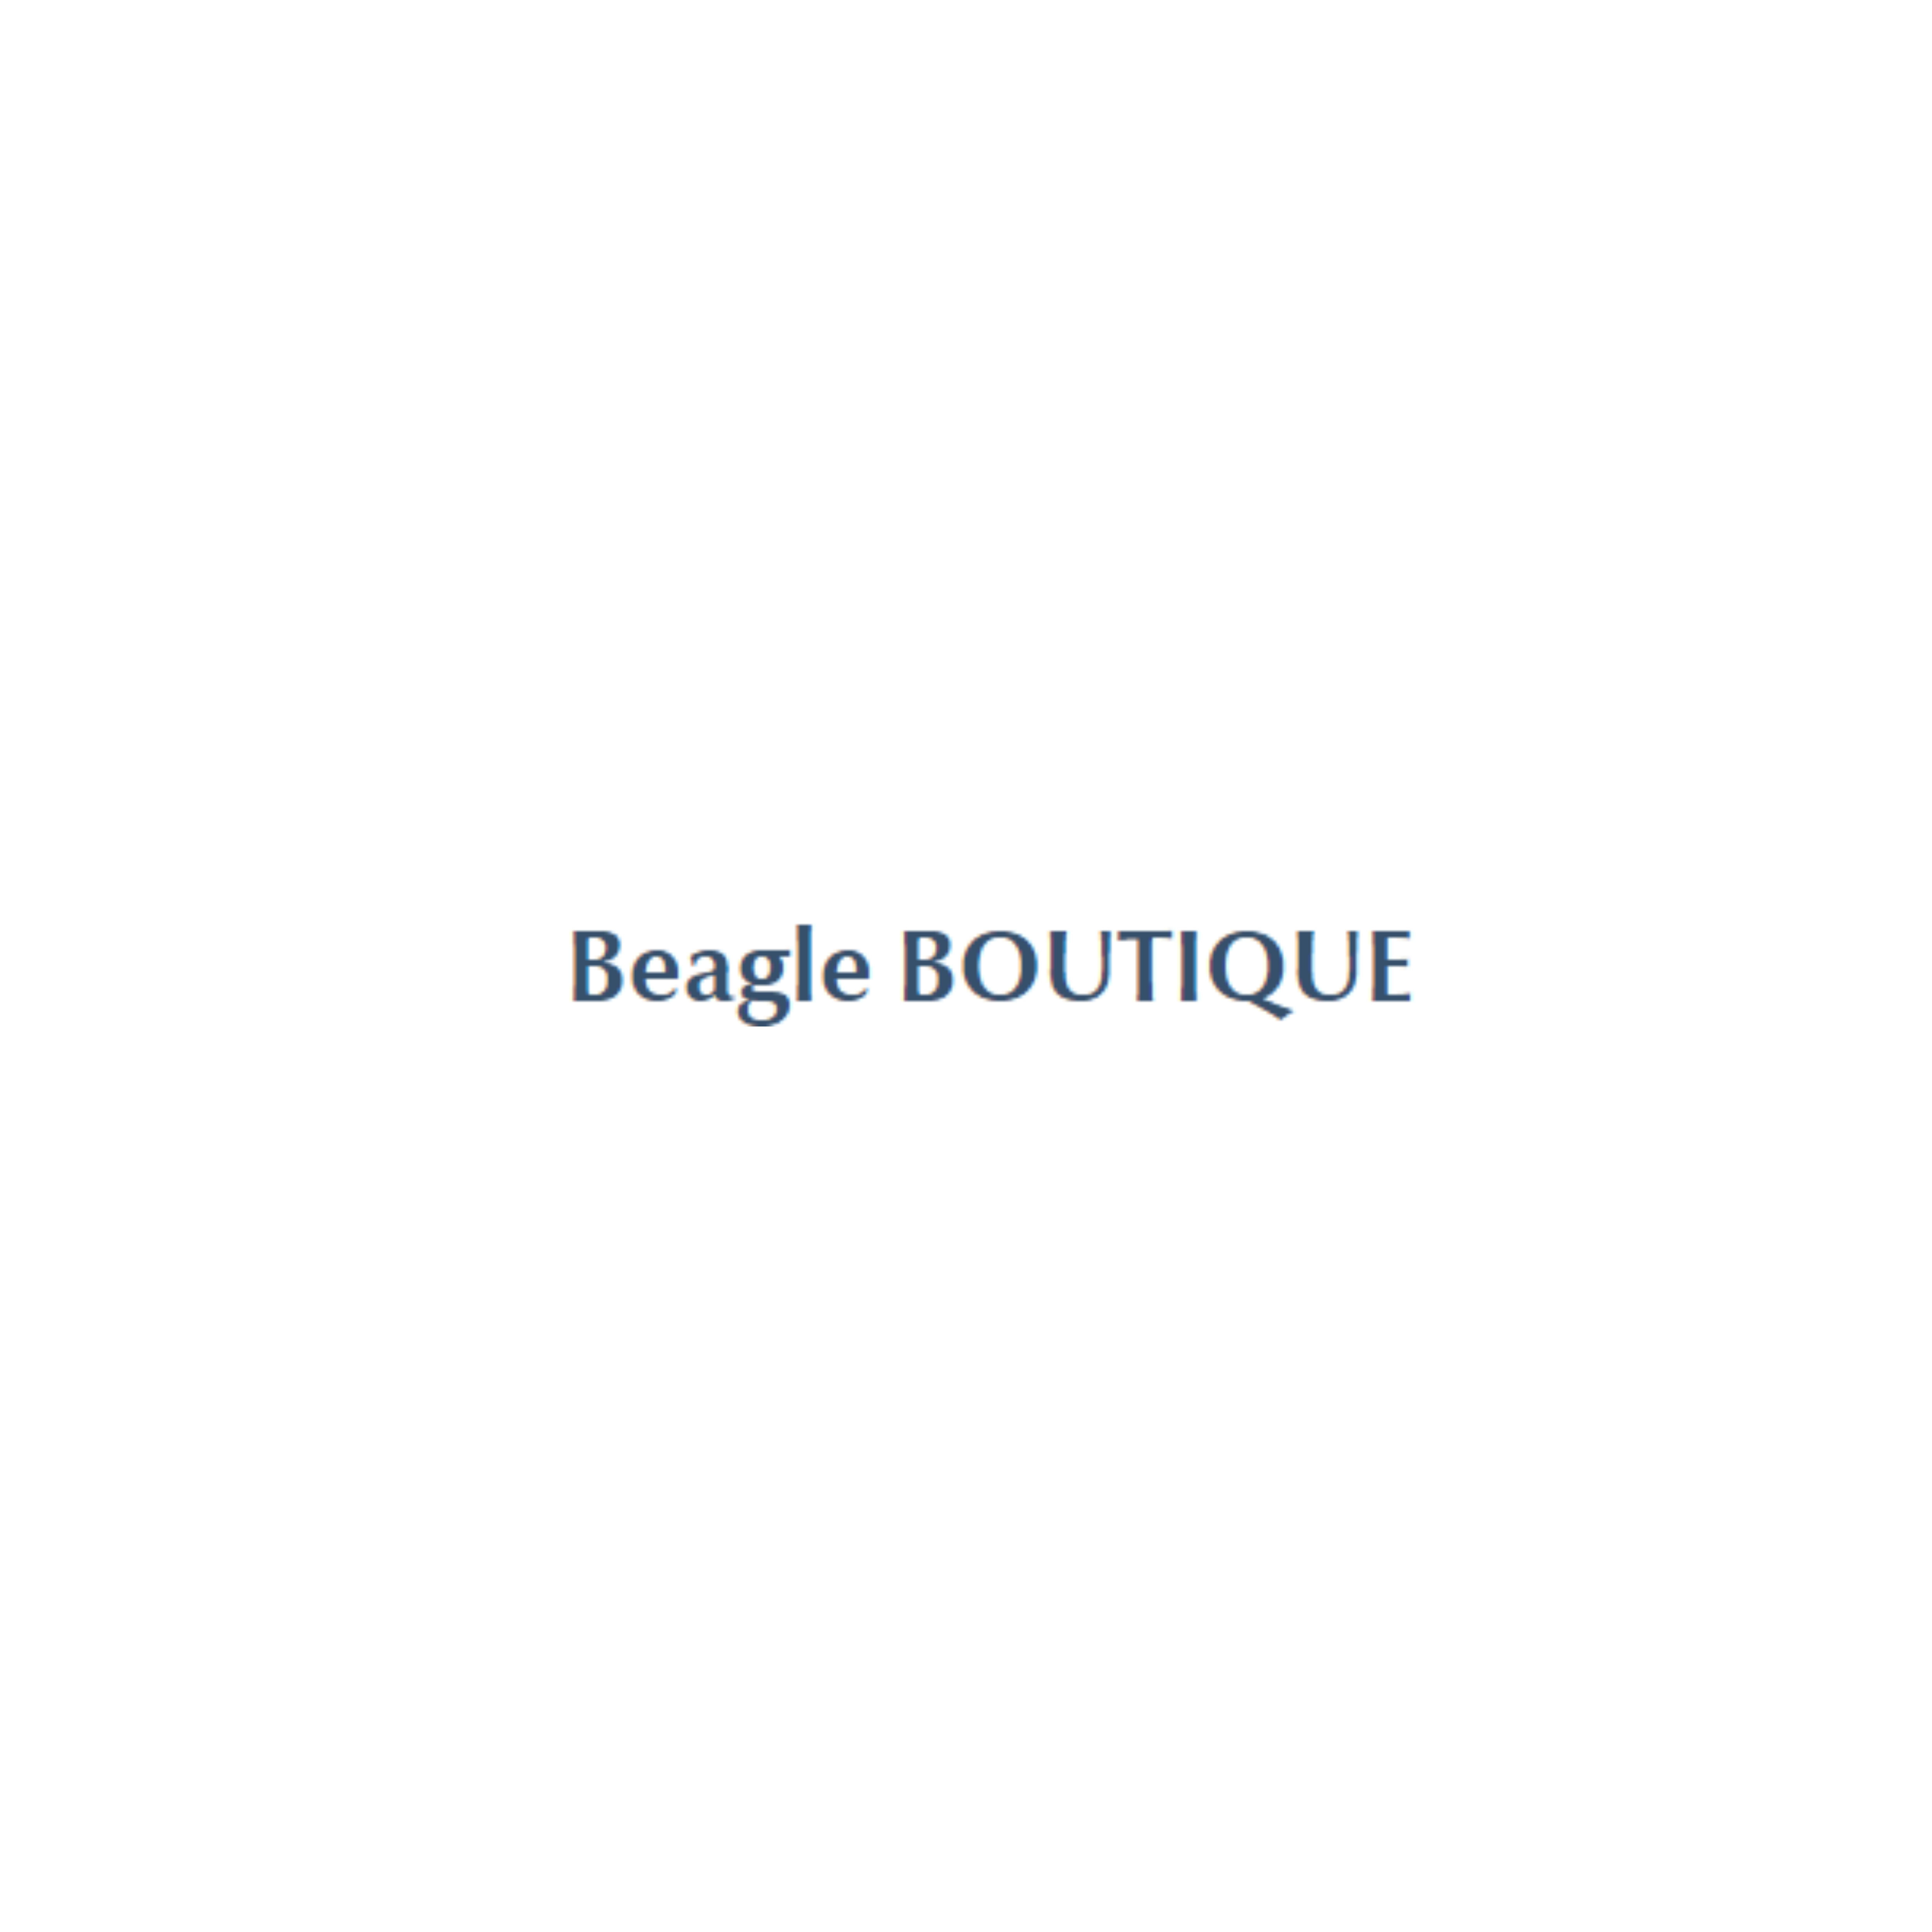 Beagle BOUTIQUE